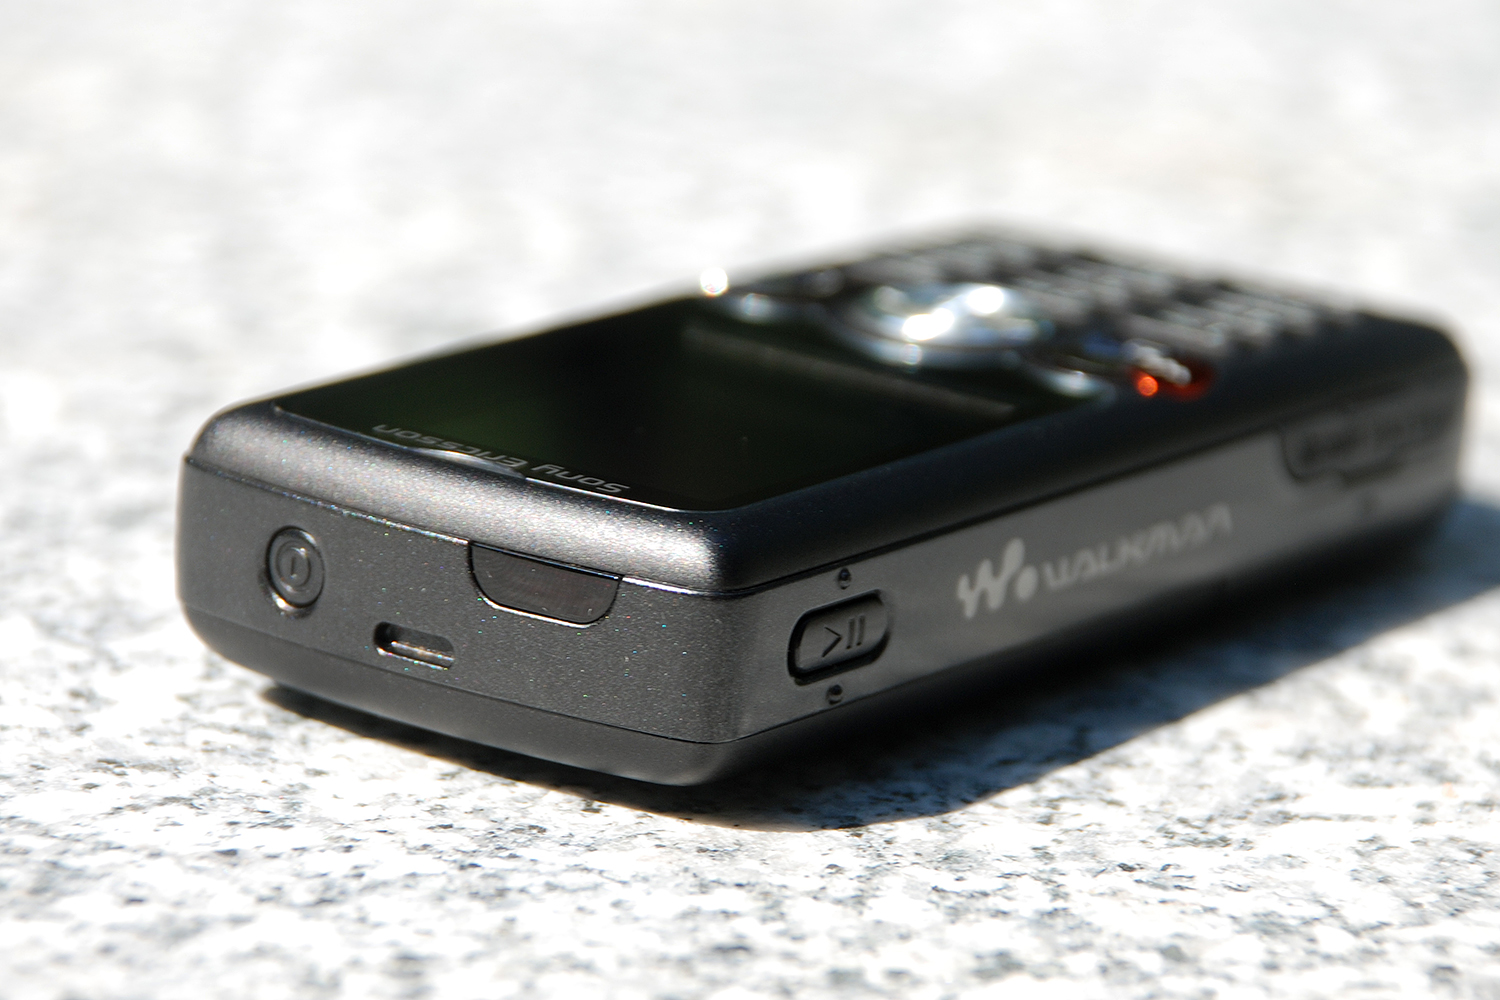 walkman|Walkman是一代人的情怀 回顾索尼爱立信W810c